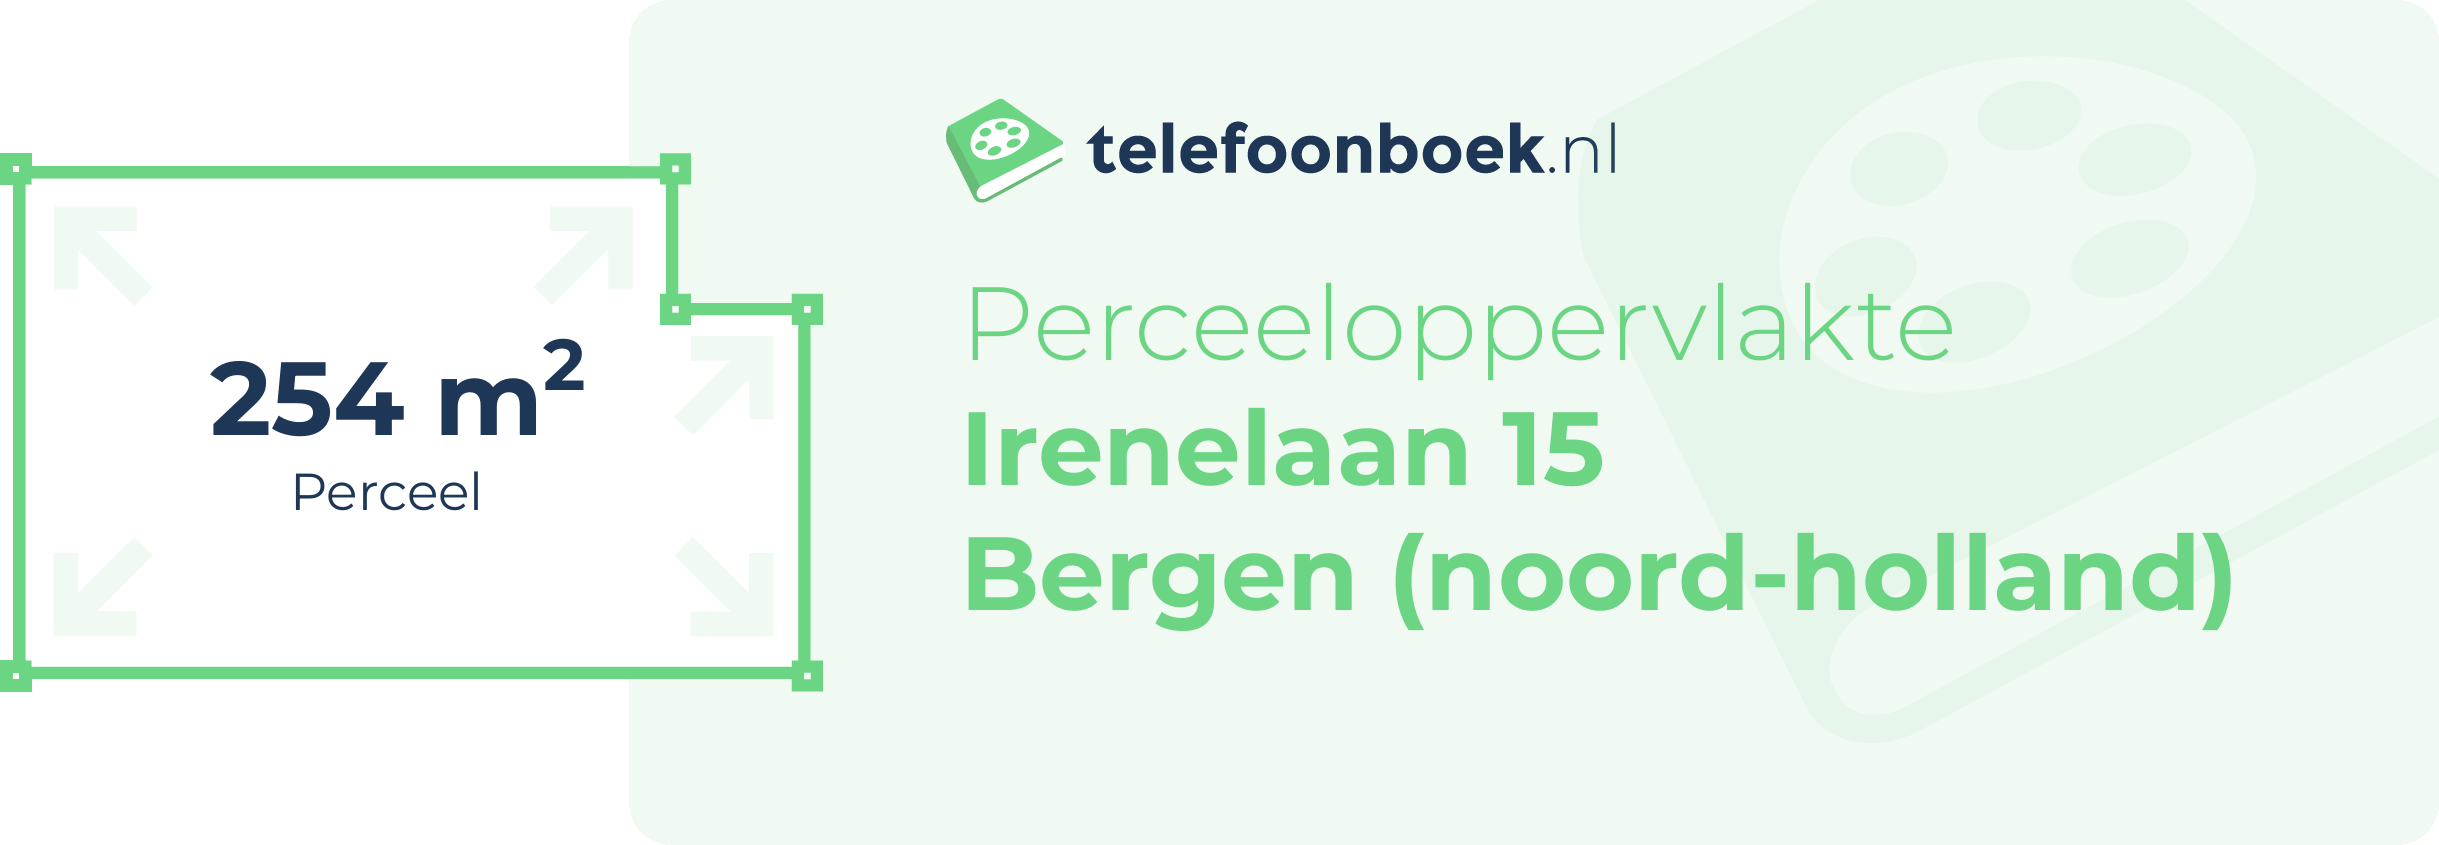 Perceeloppervlakte Irenelaan 15 Bergen (Noord-Holland)